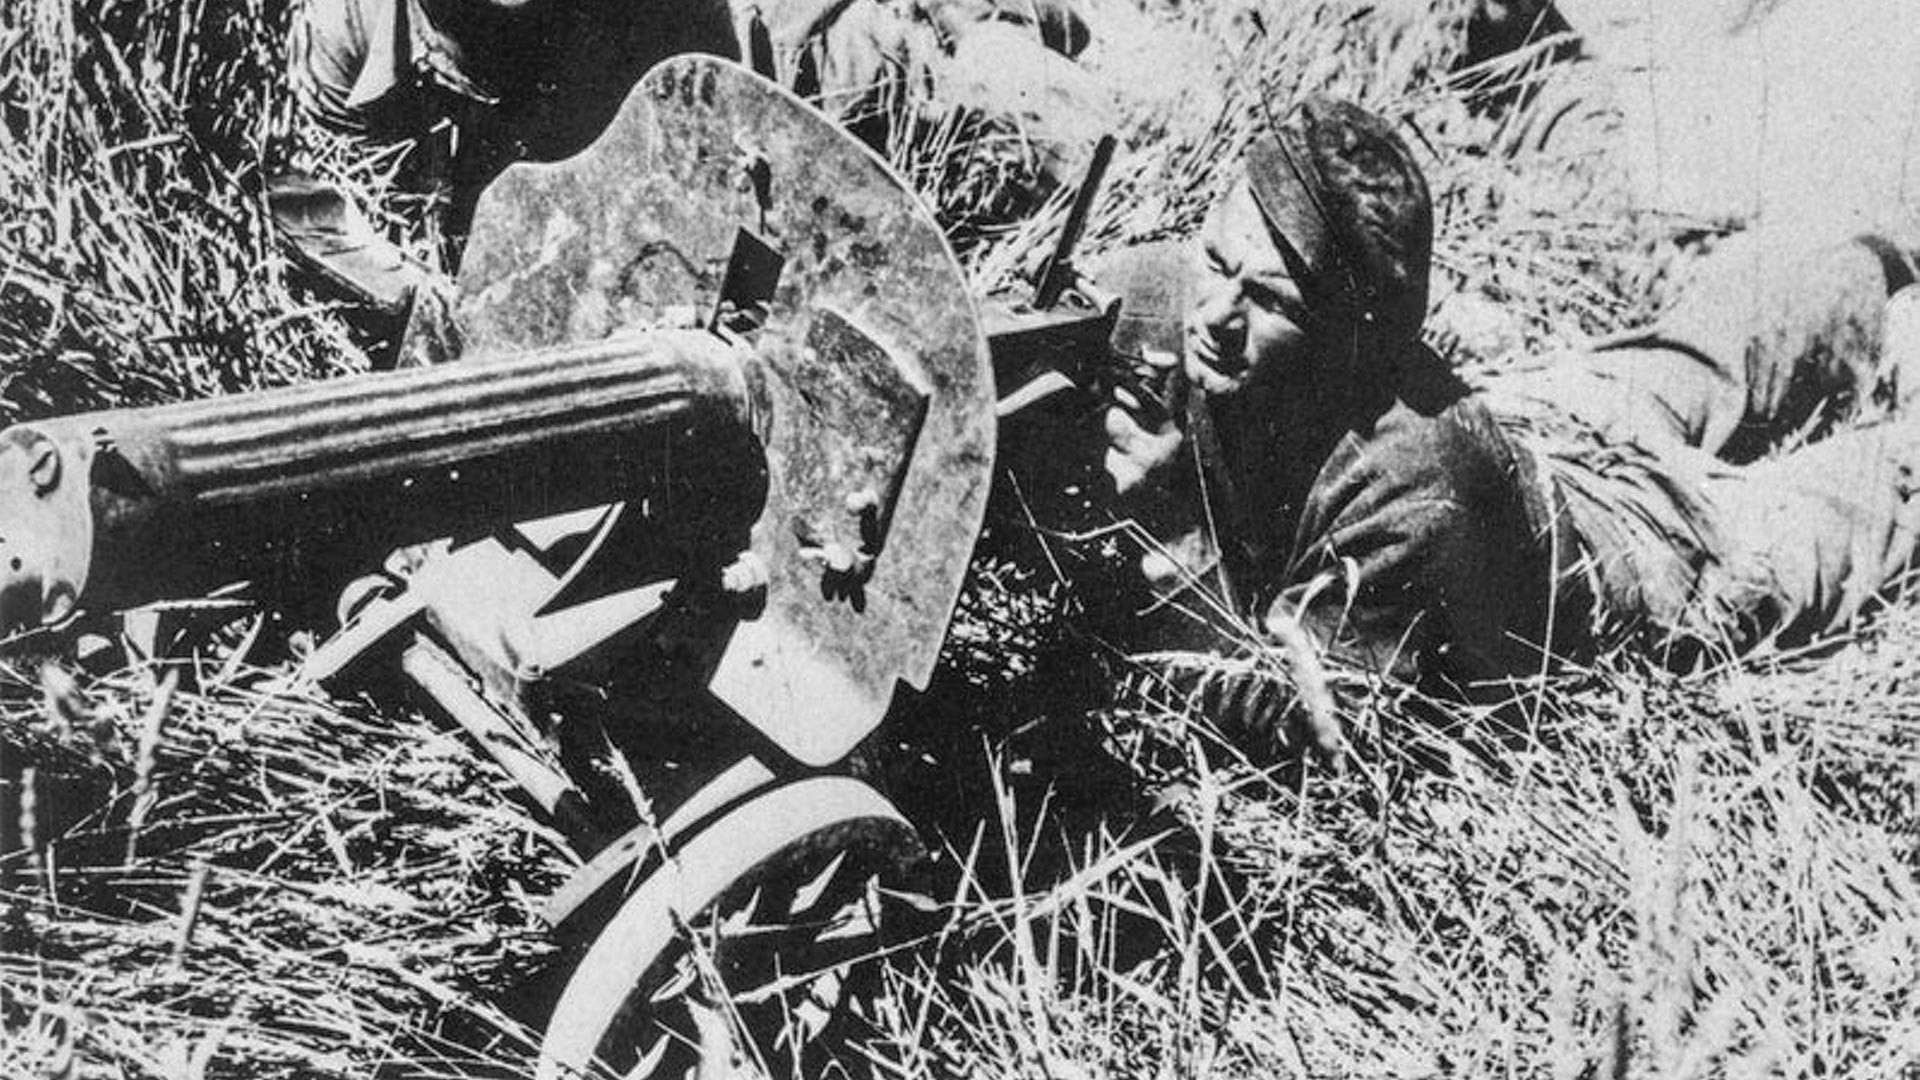 Soldati delle “Brigate internazionali”, i volontari stranieri filo repubblicani nella Guerra civile spagnola, con una mitragliatrice di fabbricazione sovietica
